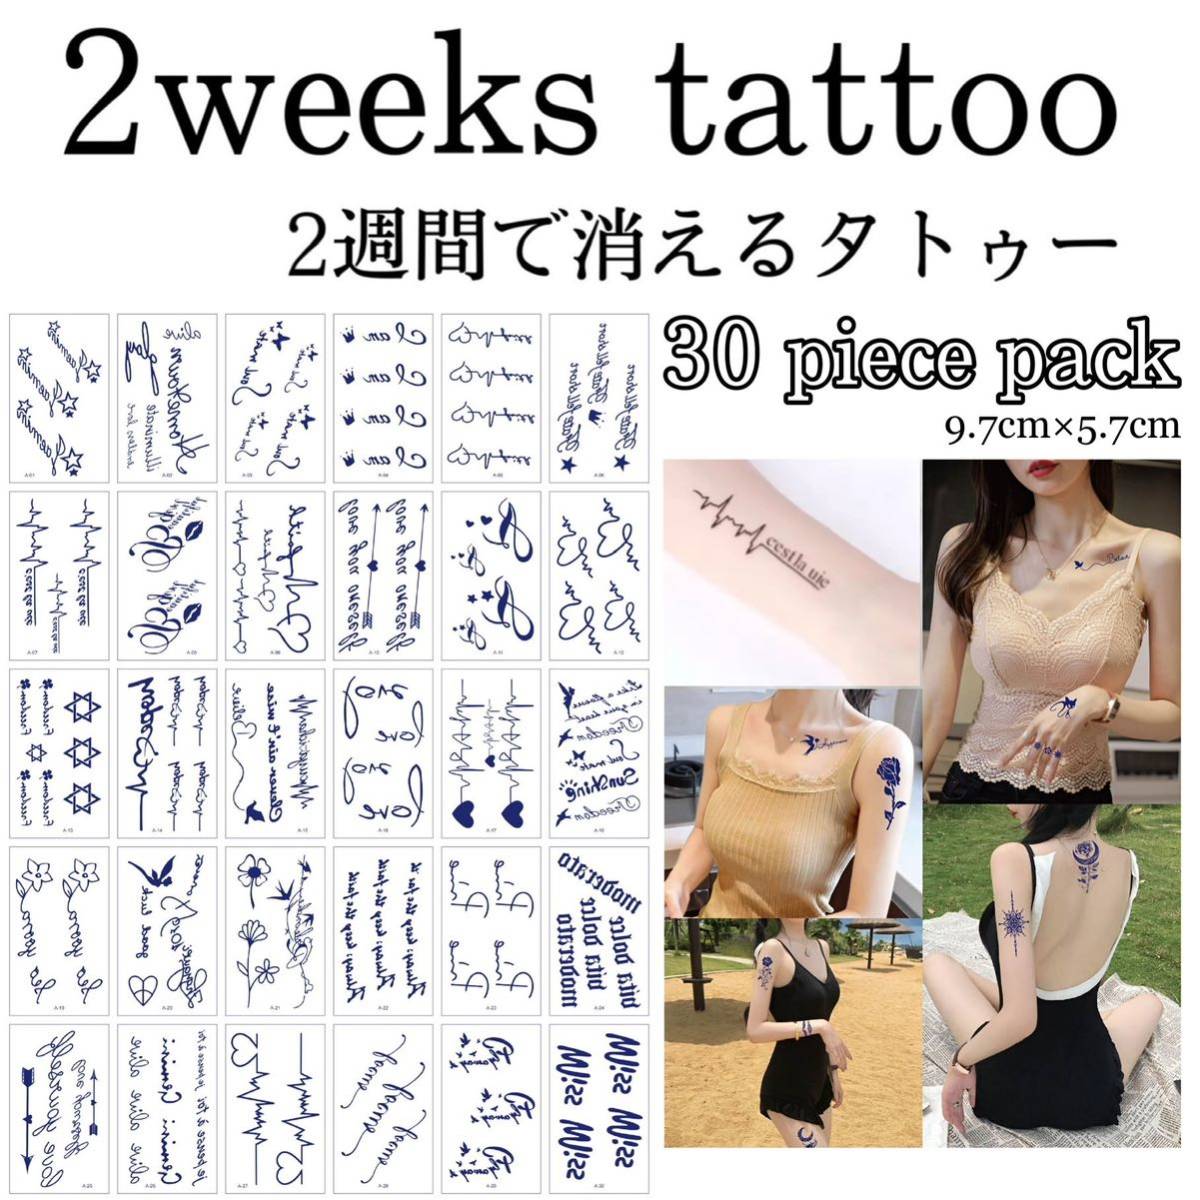 【A】ミニジャグアタトゥー30枚セット 2週間で消えるタトゥー イベント タトゥーシール